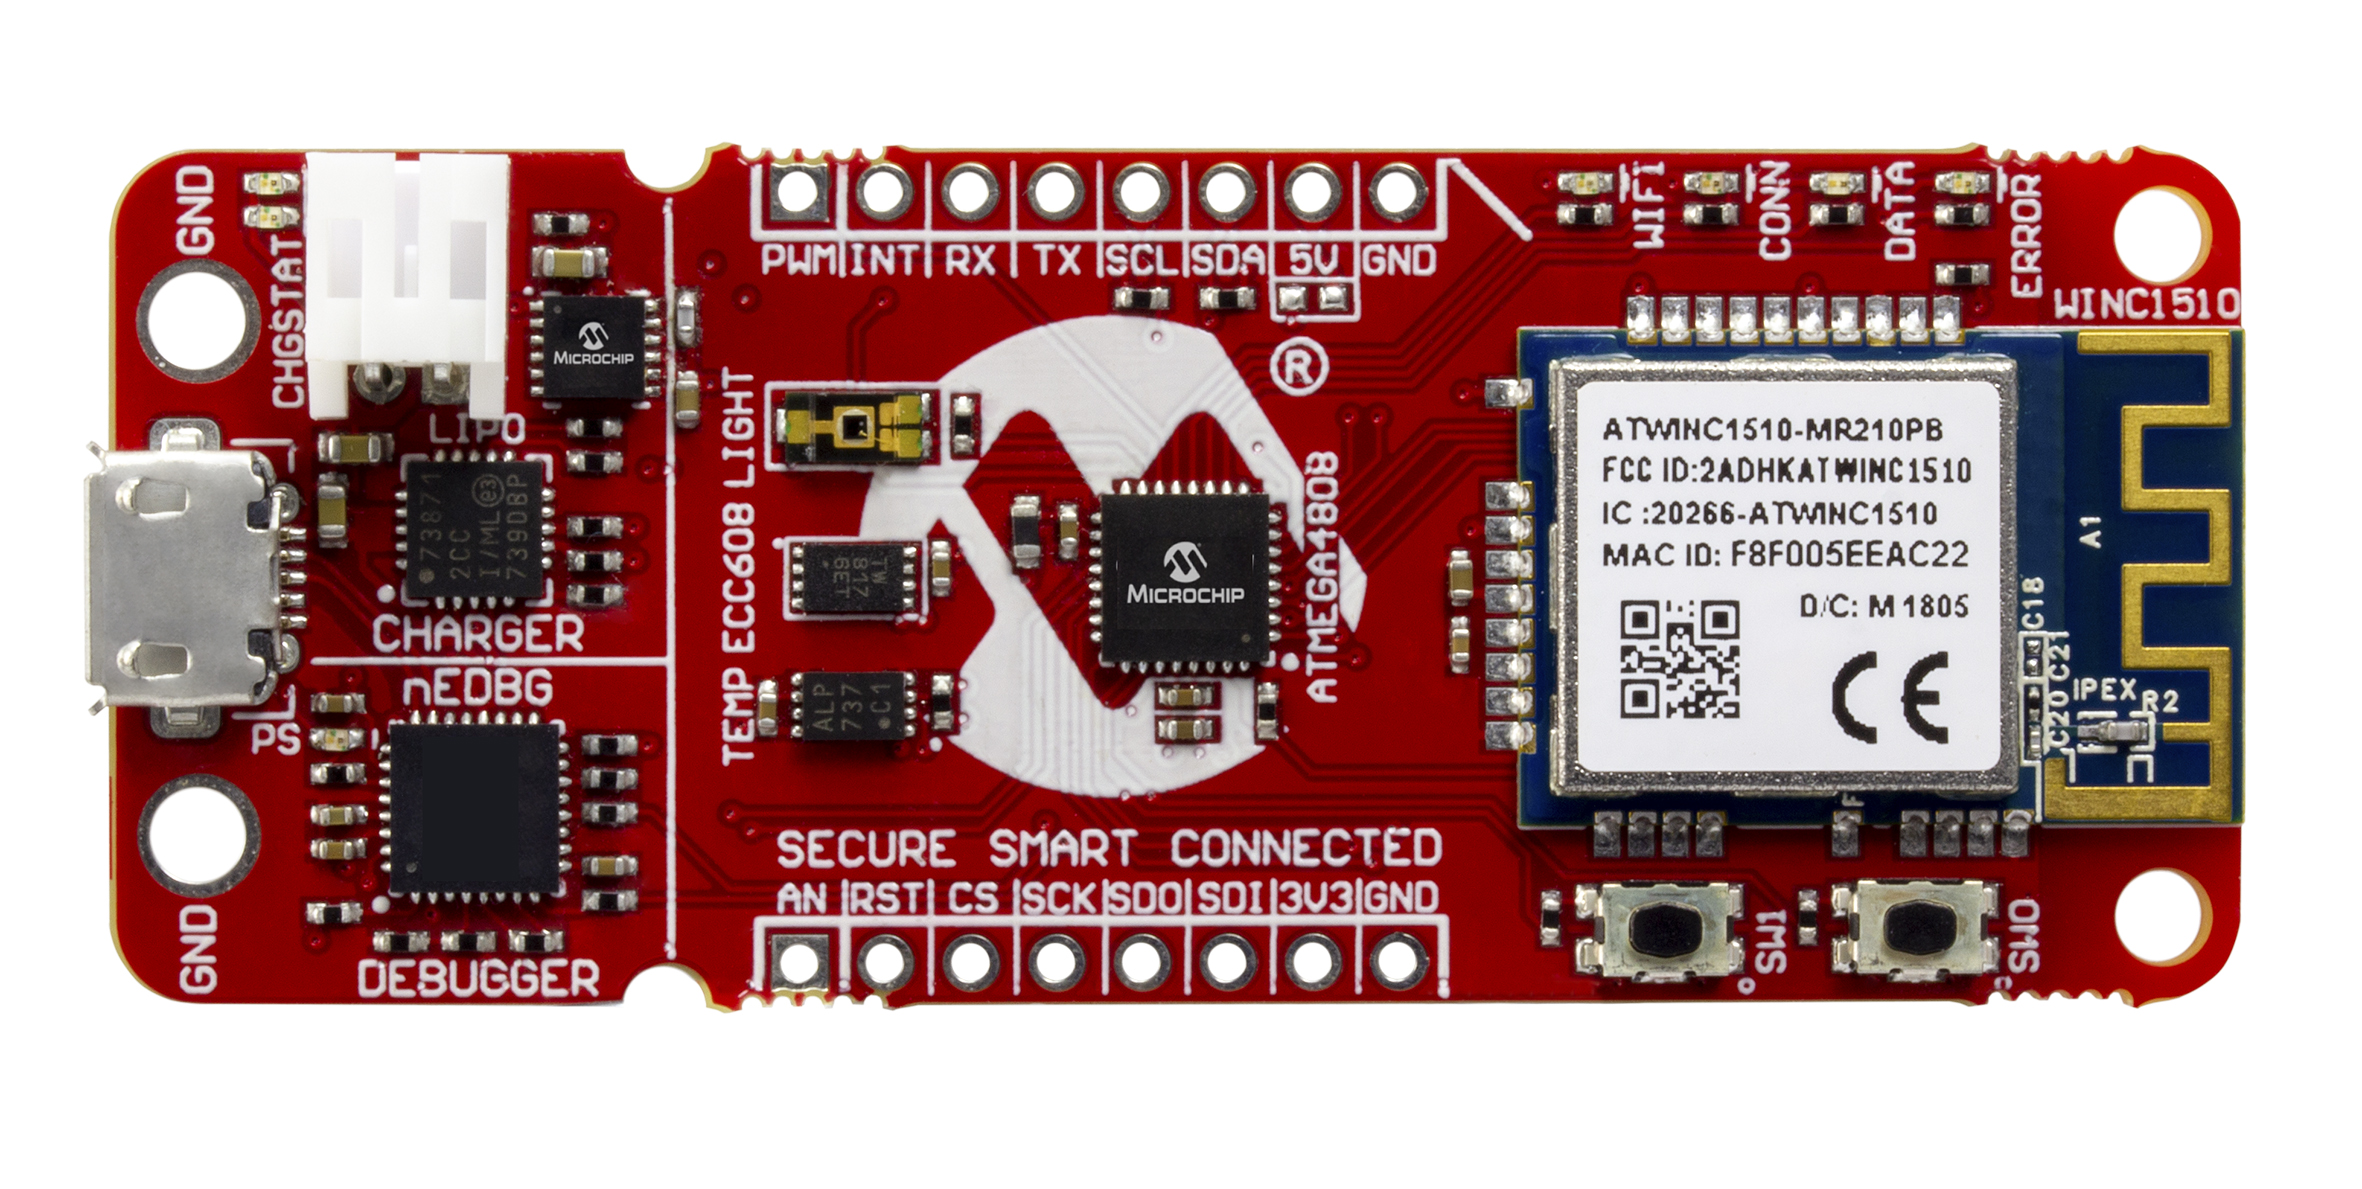 Afbeelding 4. De AVR-IoT WG ontwikkelkaart combineert een AVR microcontroller, geïntegreerd beveiligingselement (IC) en een gecertificeerde Wifi netwerk controller, waarmee ontwerpers een prototype van een verbonden apparaat binnen minuten kunnen realiseren.